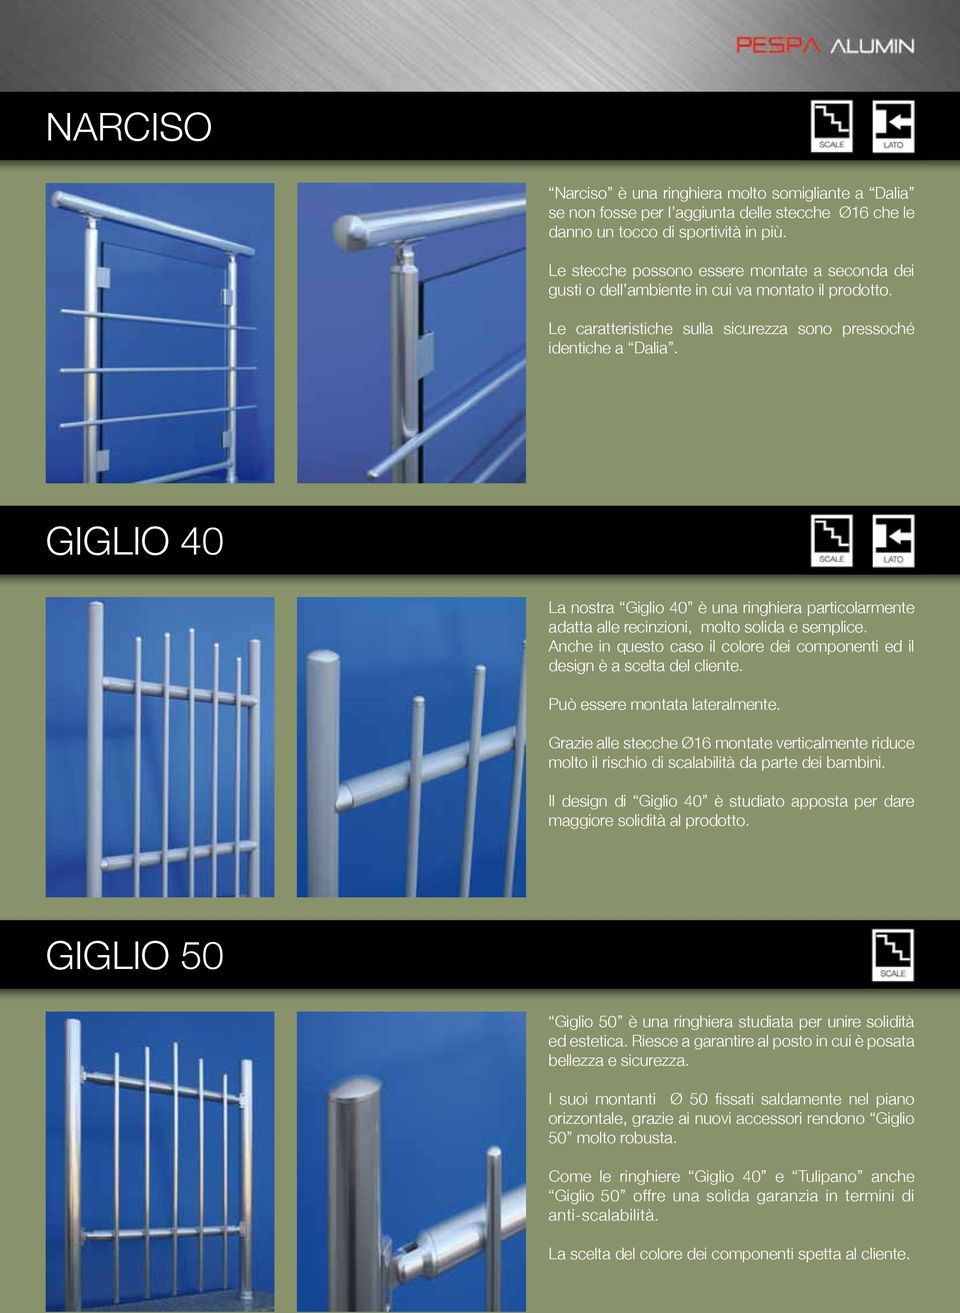 GIGLIO 40 La nostra Giglio 40 è una ringhiera particolarmente adatta alle recinzioni, molto solida e semplice. Anche in questo caso il colore dei componenti ed il design è a scelta del cliente.